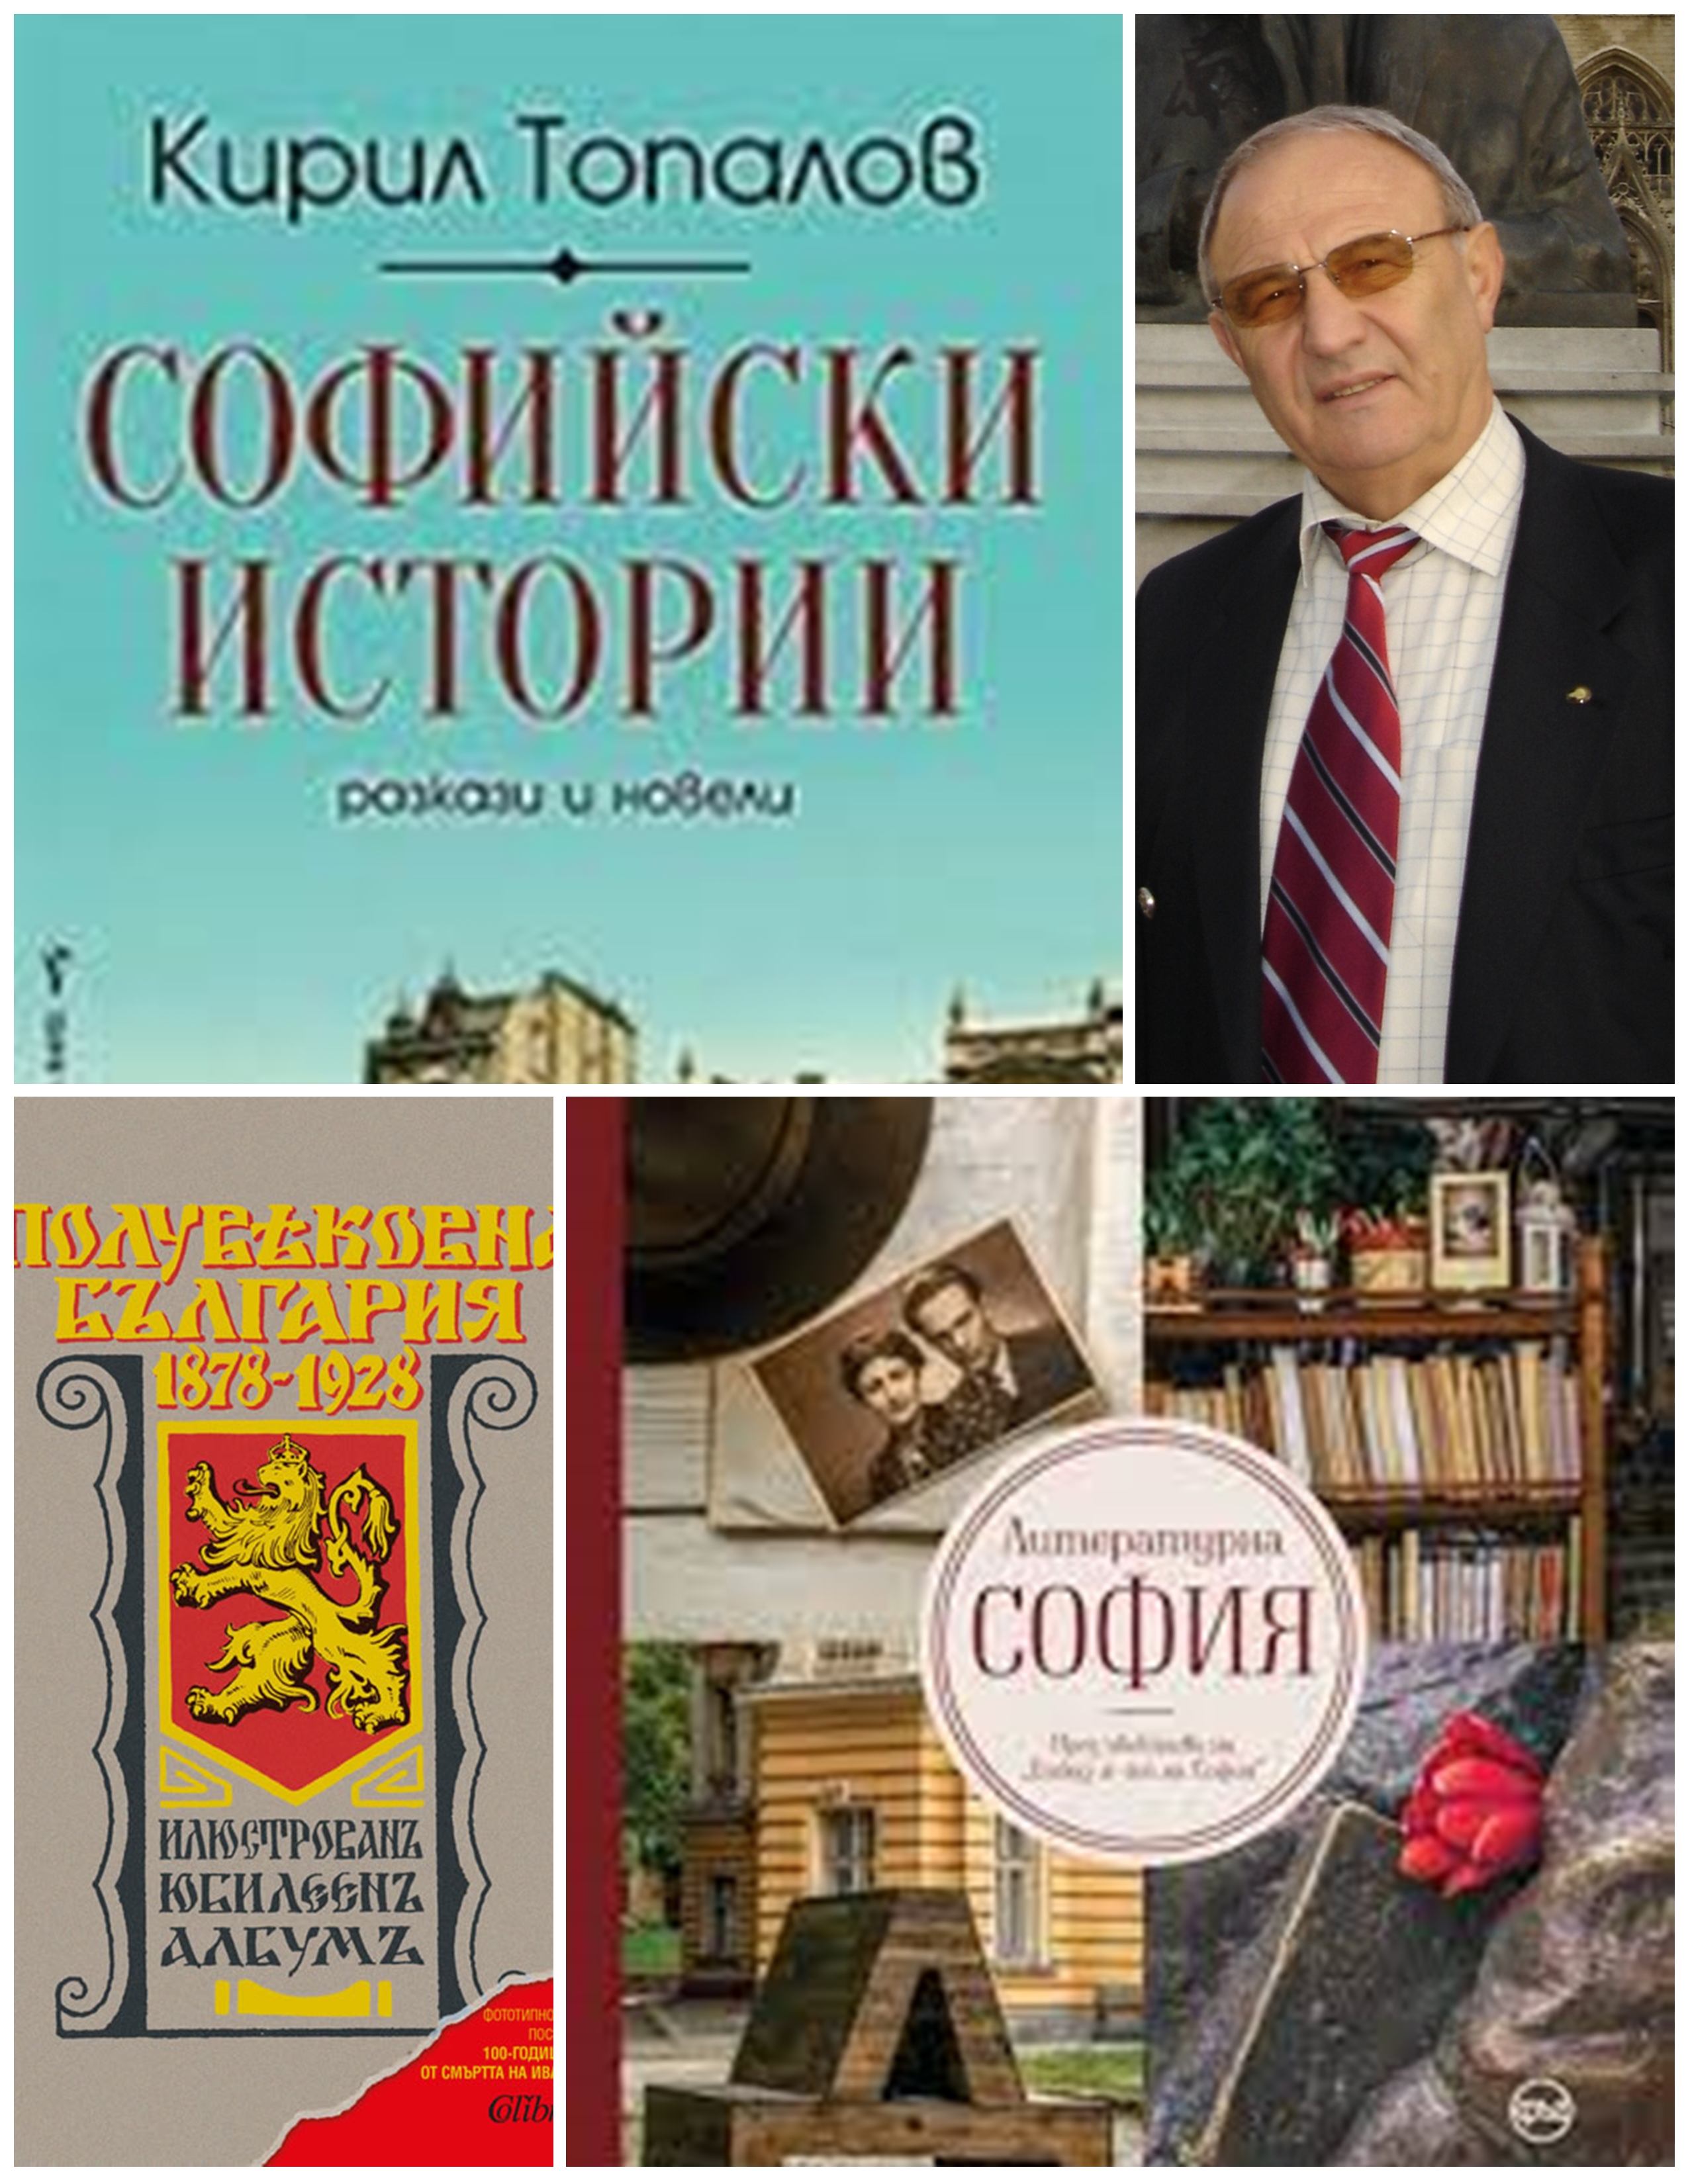 Колонката на Г. Цанков: Кирил Топалов и неговите софийски истории. Спомен за Марин Бодаков